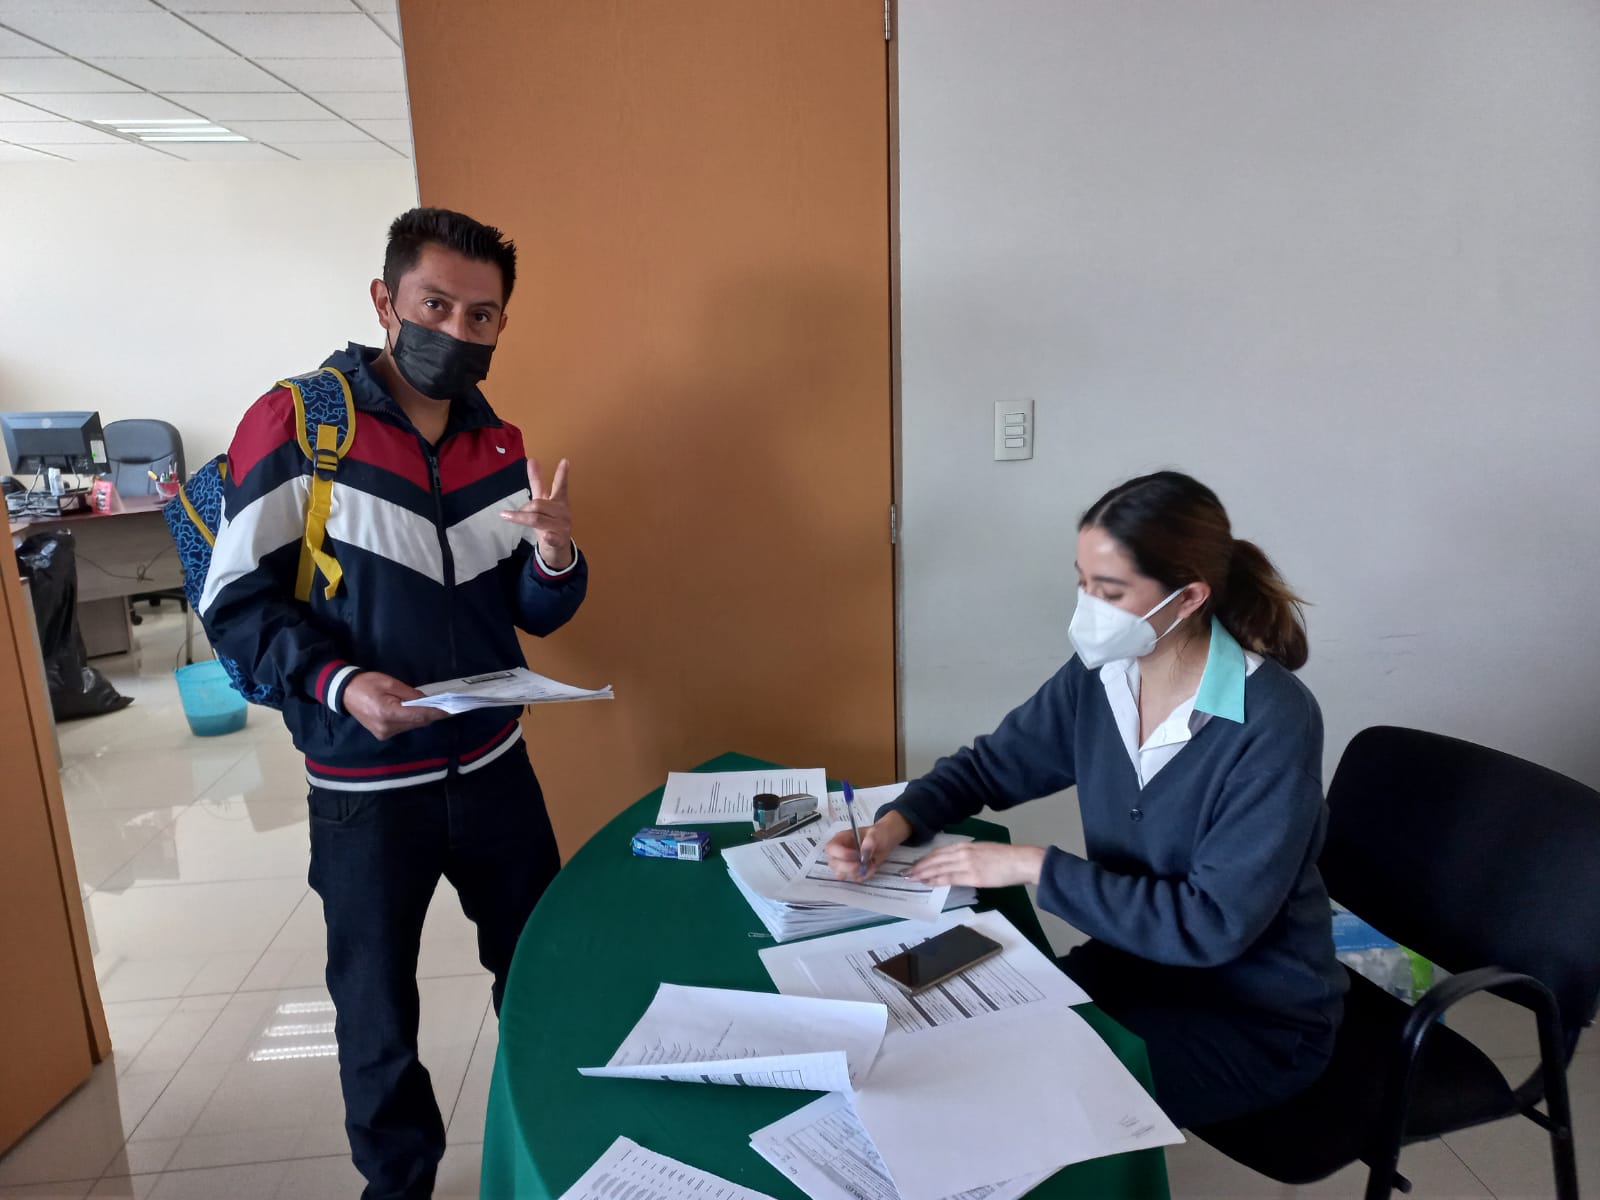 La alcaldía Álvaro Obregón ofrece estas vacantes de empleo para habitantes de la demarcación y de la CDMX | Foto: Twitter SNE